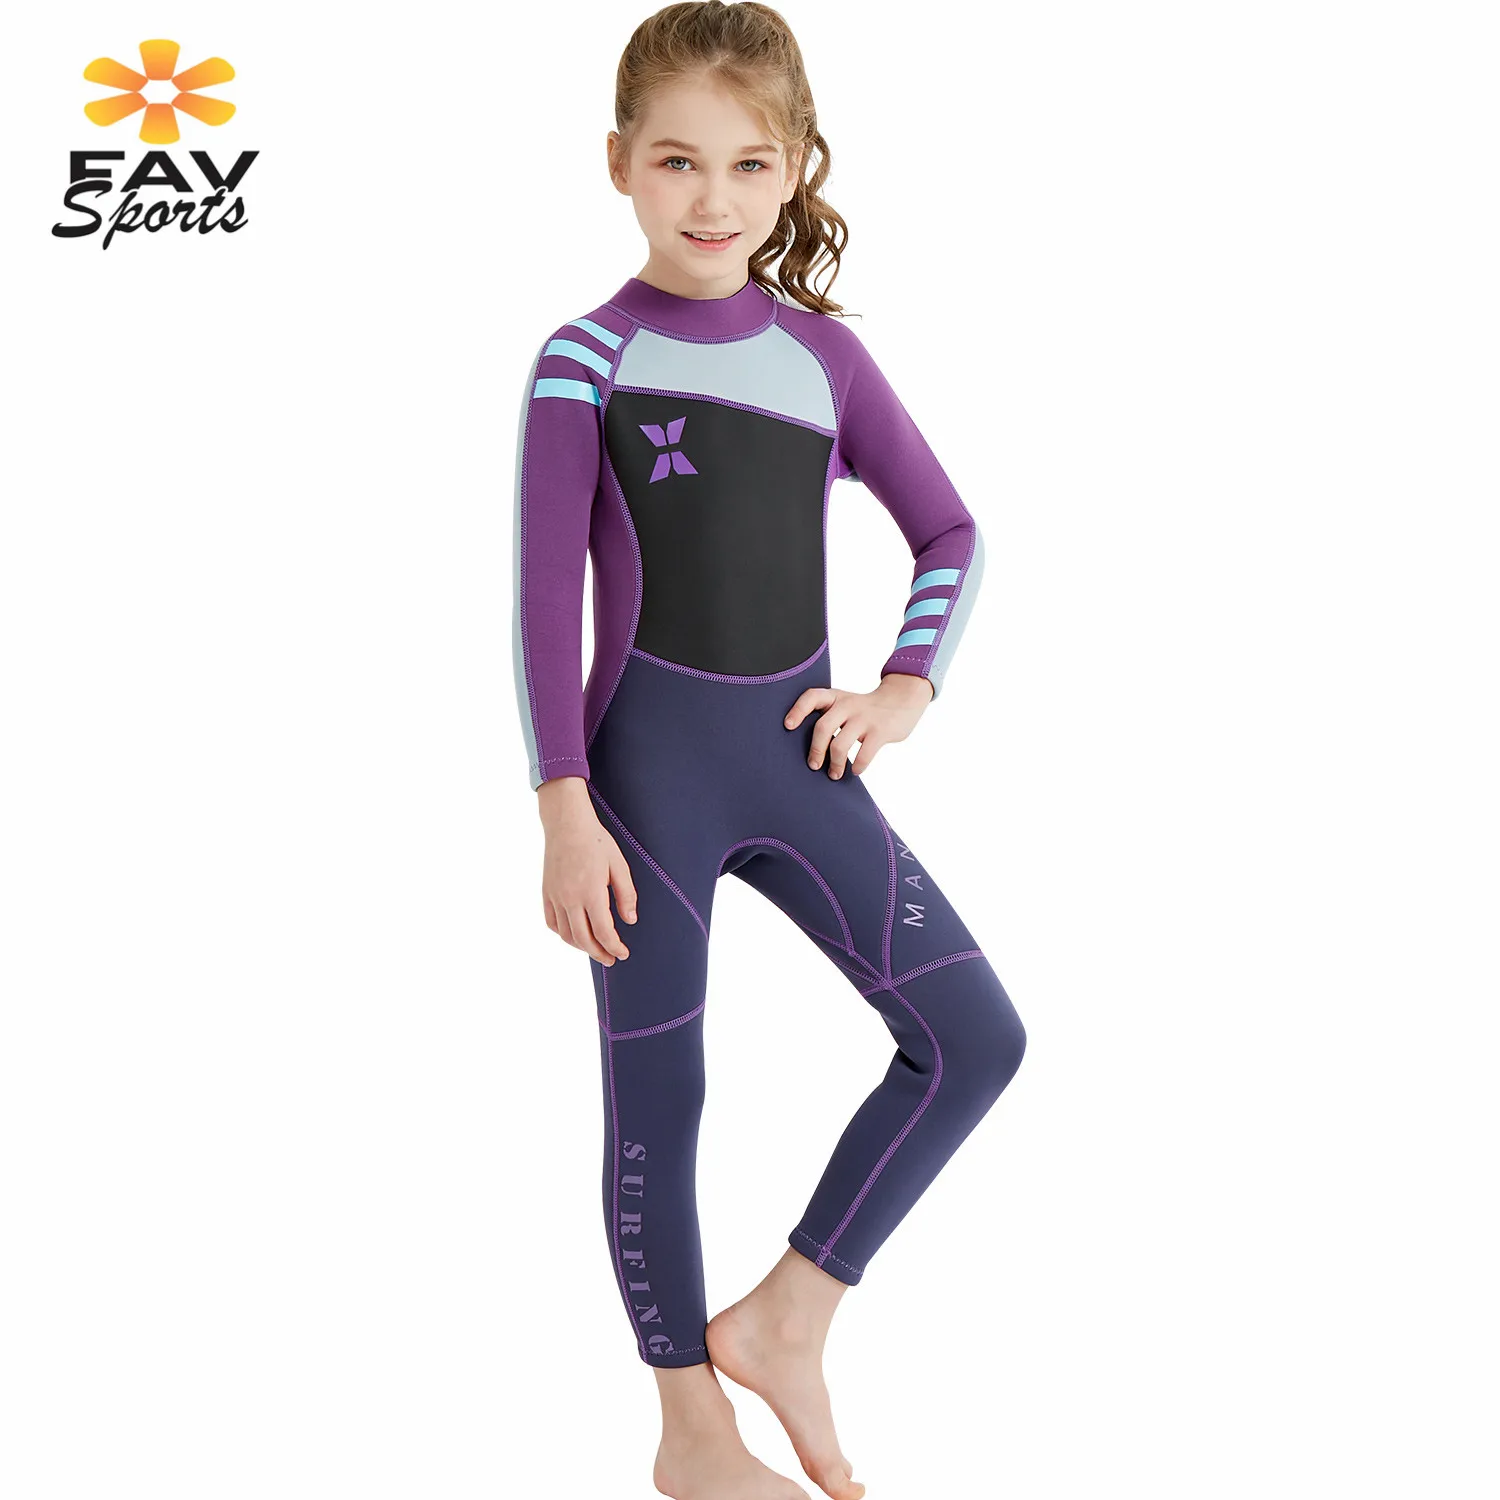 FAVSPORTS купальники для девочек 2,5 мм Неопреновые водолазные костюмы с защитой от ультрафиолетового излучения Теплый купальник для детей полный боди для серфинга плавательный костюм - Цвет: Фиолетовый